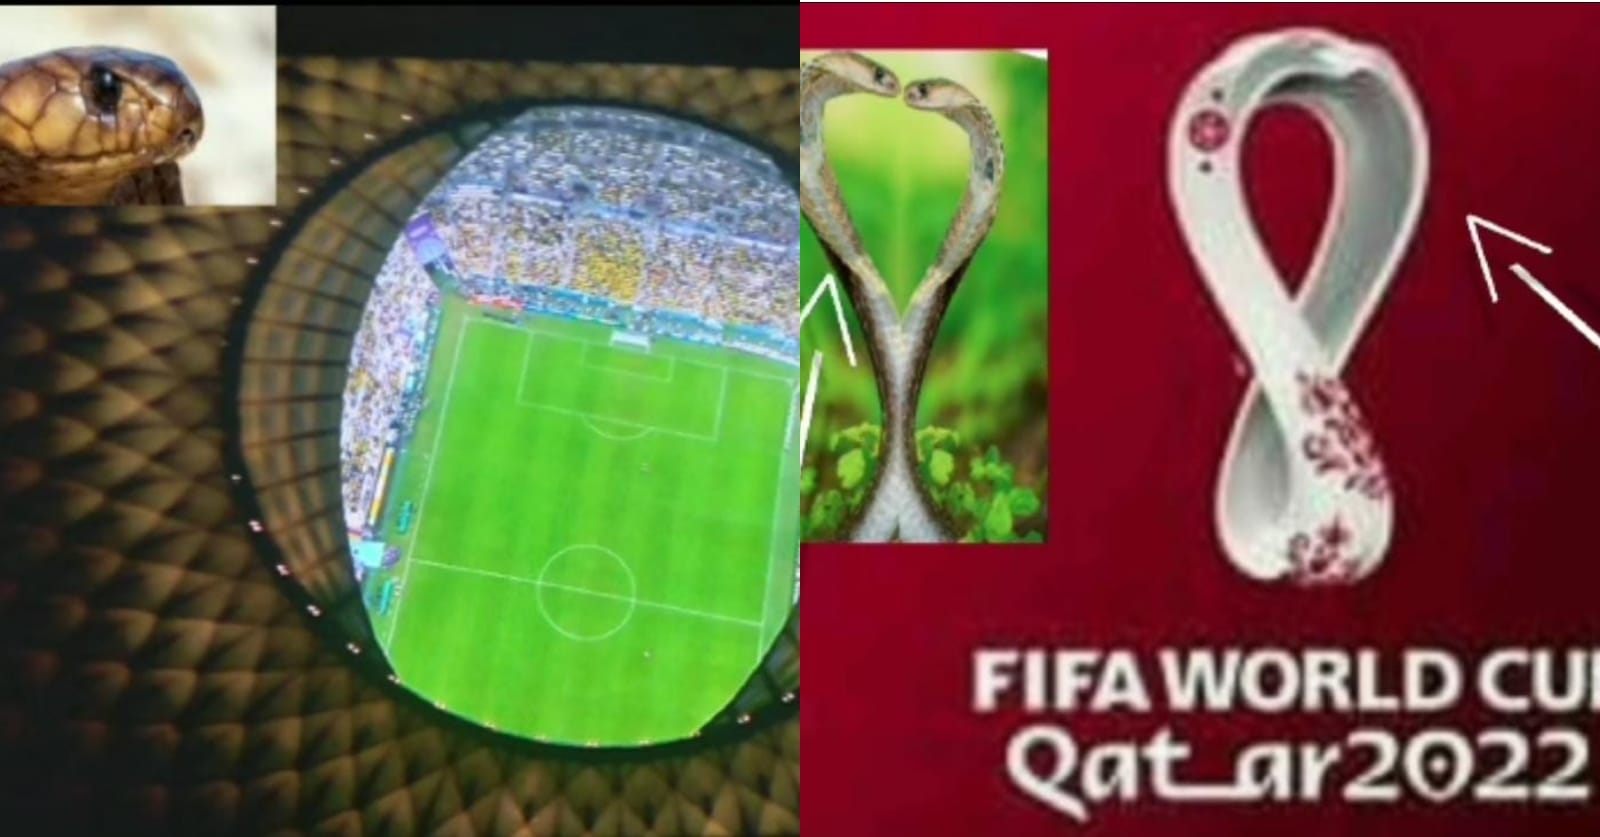 E habitshme/ Simboli i “Katar 2022” është kobra, gjithçka e dizenjuar me figurën e gjarprit